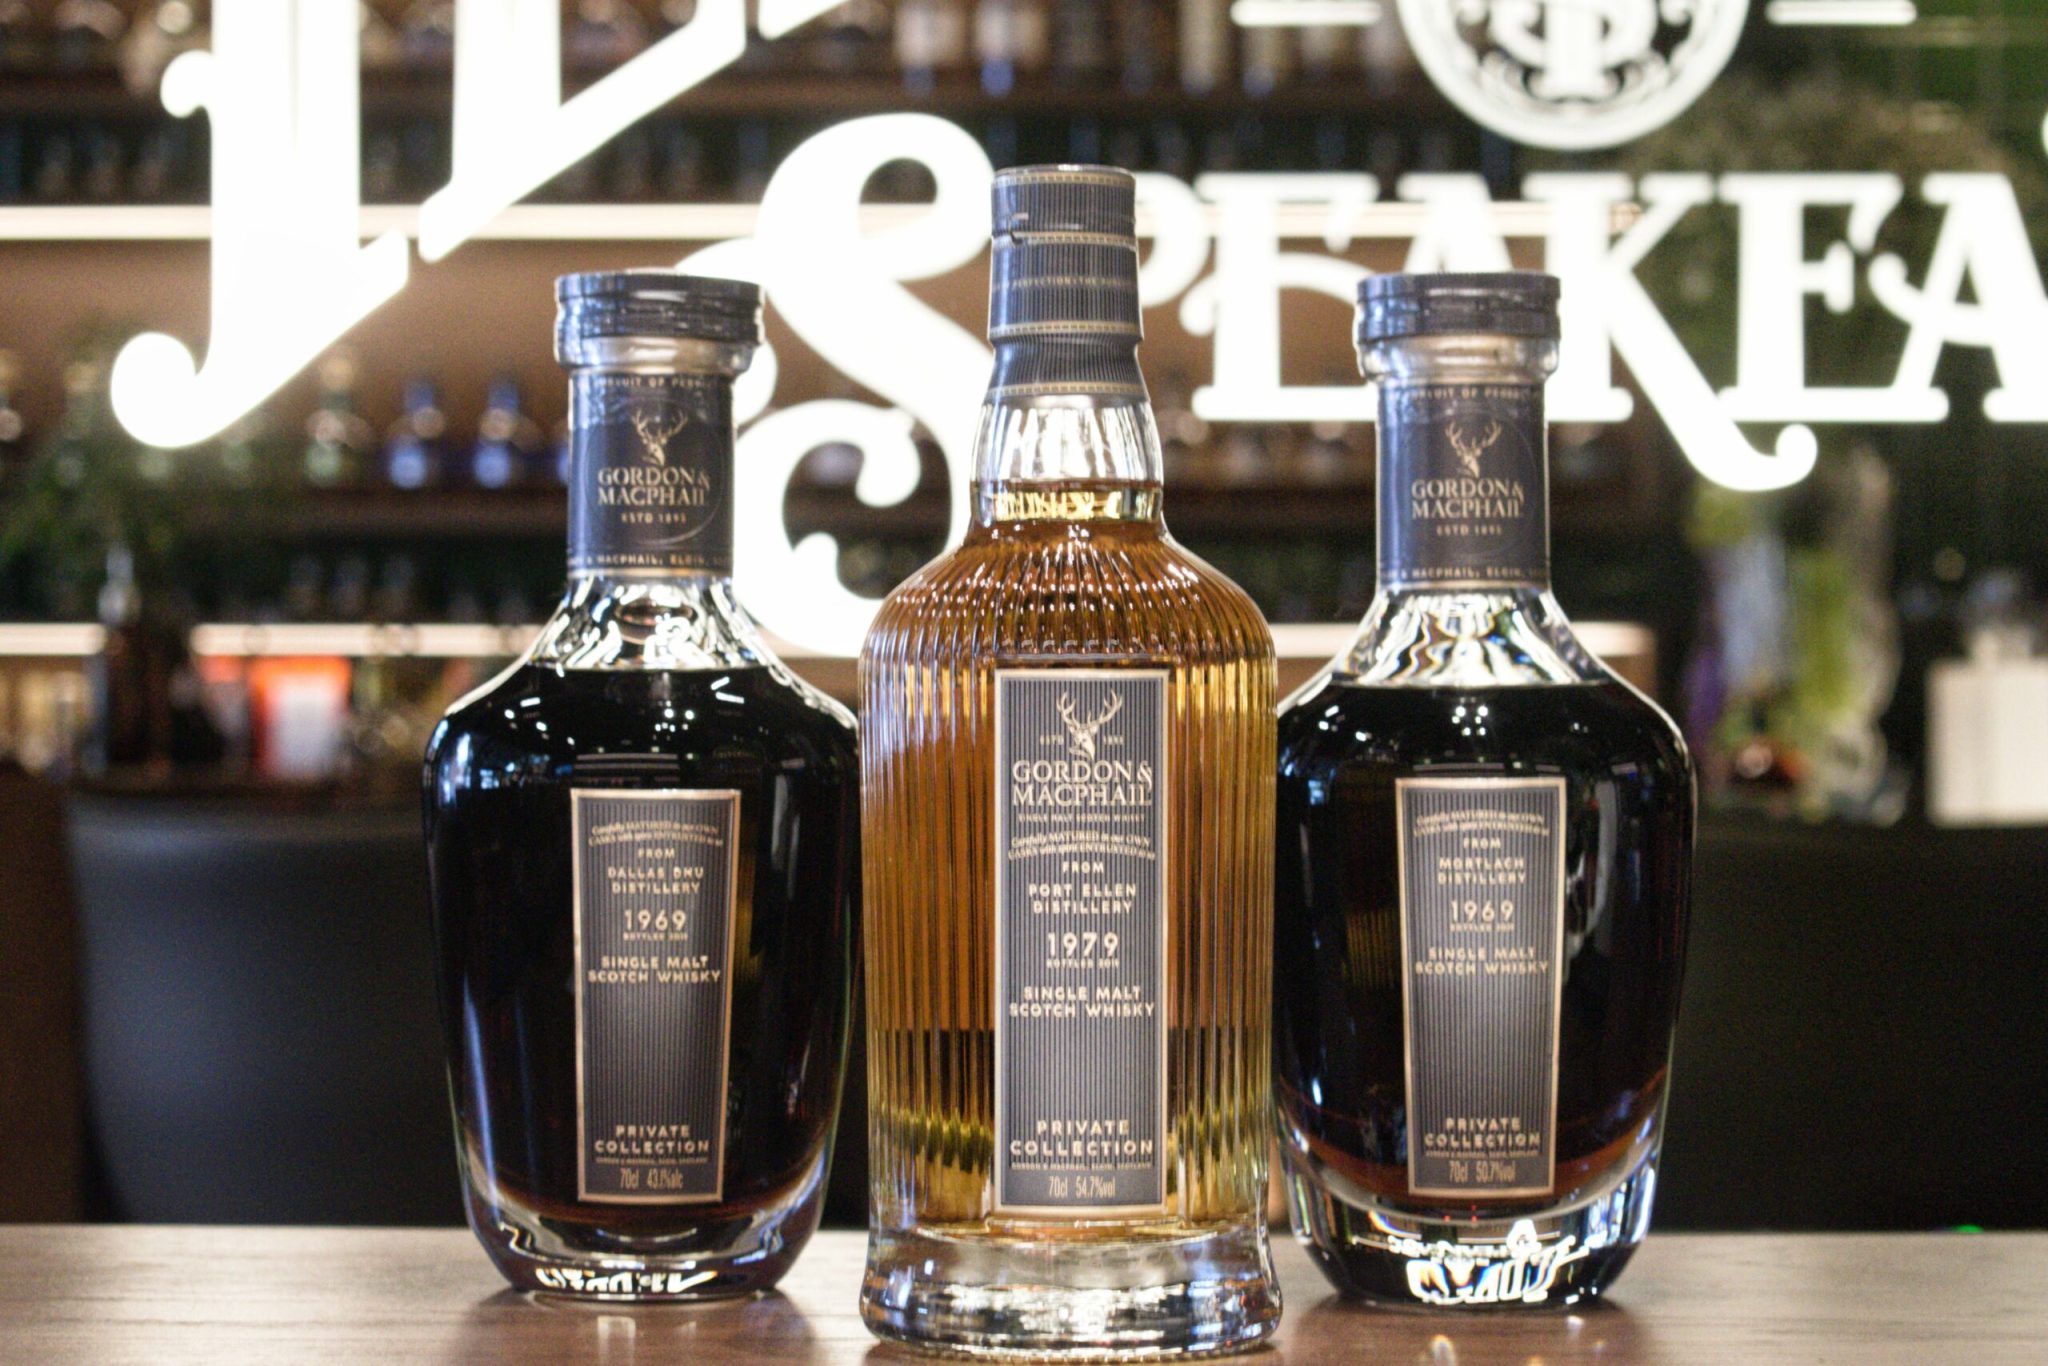 Gordon & Macphail whisky by Teddy's Speakeasy